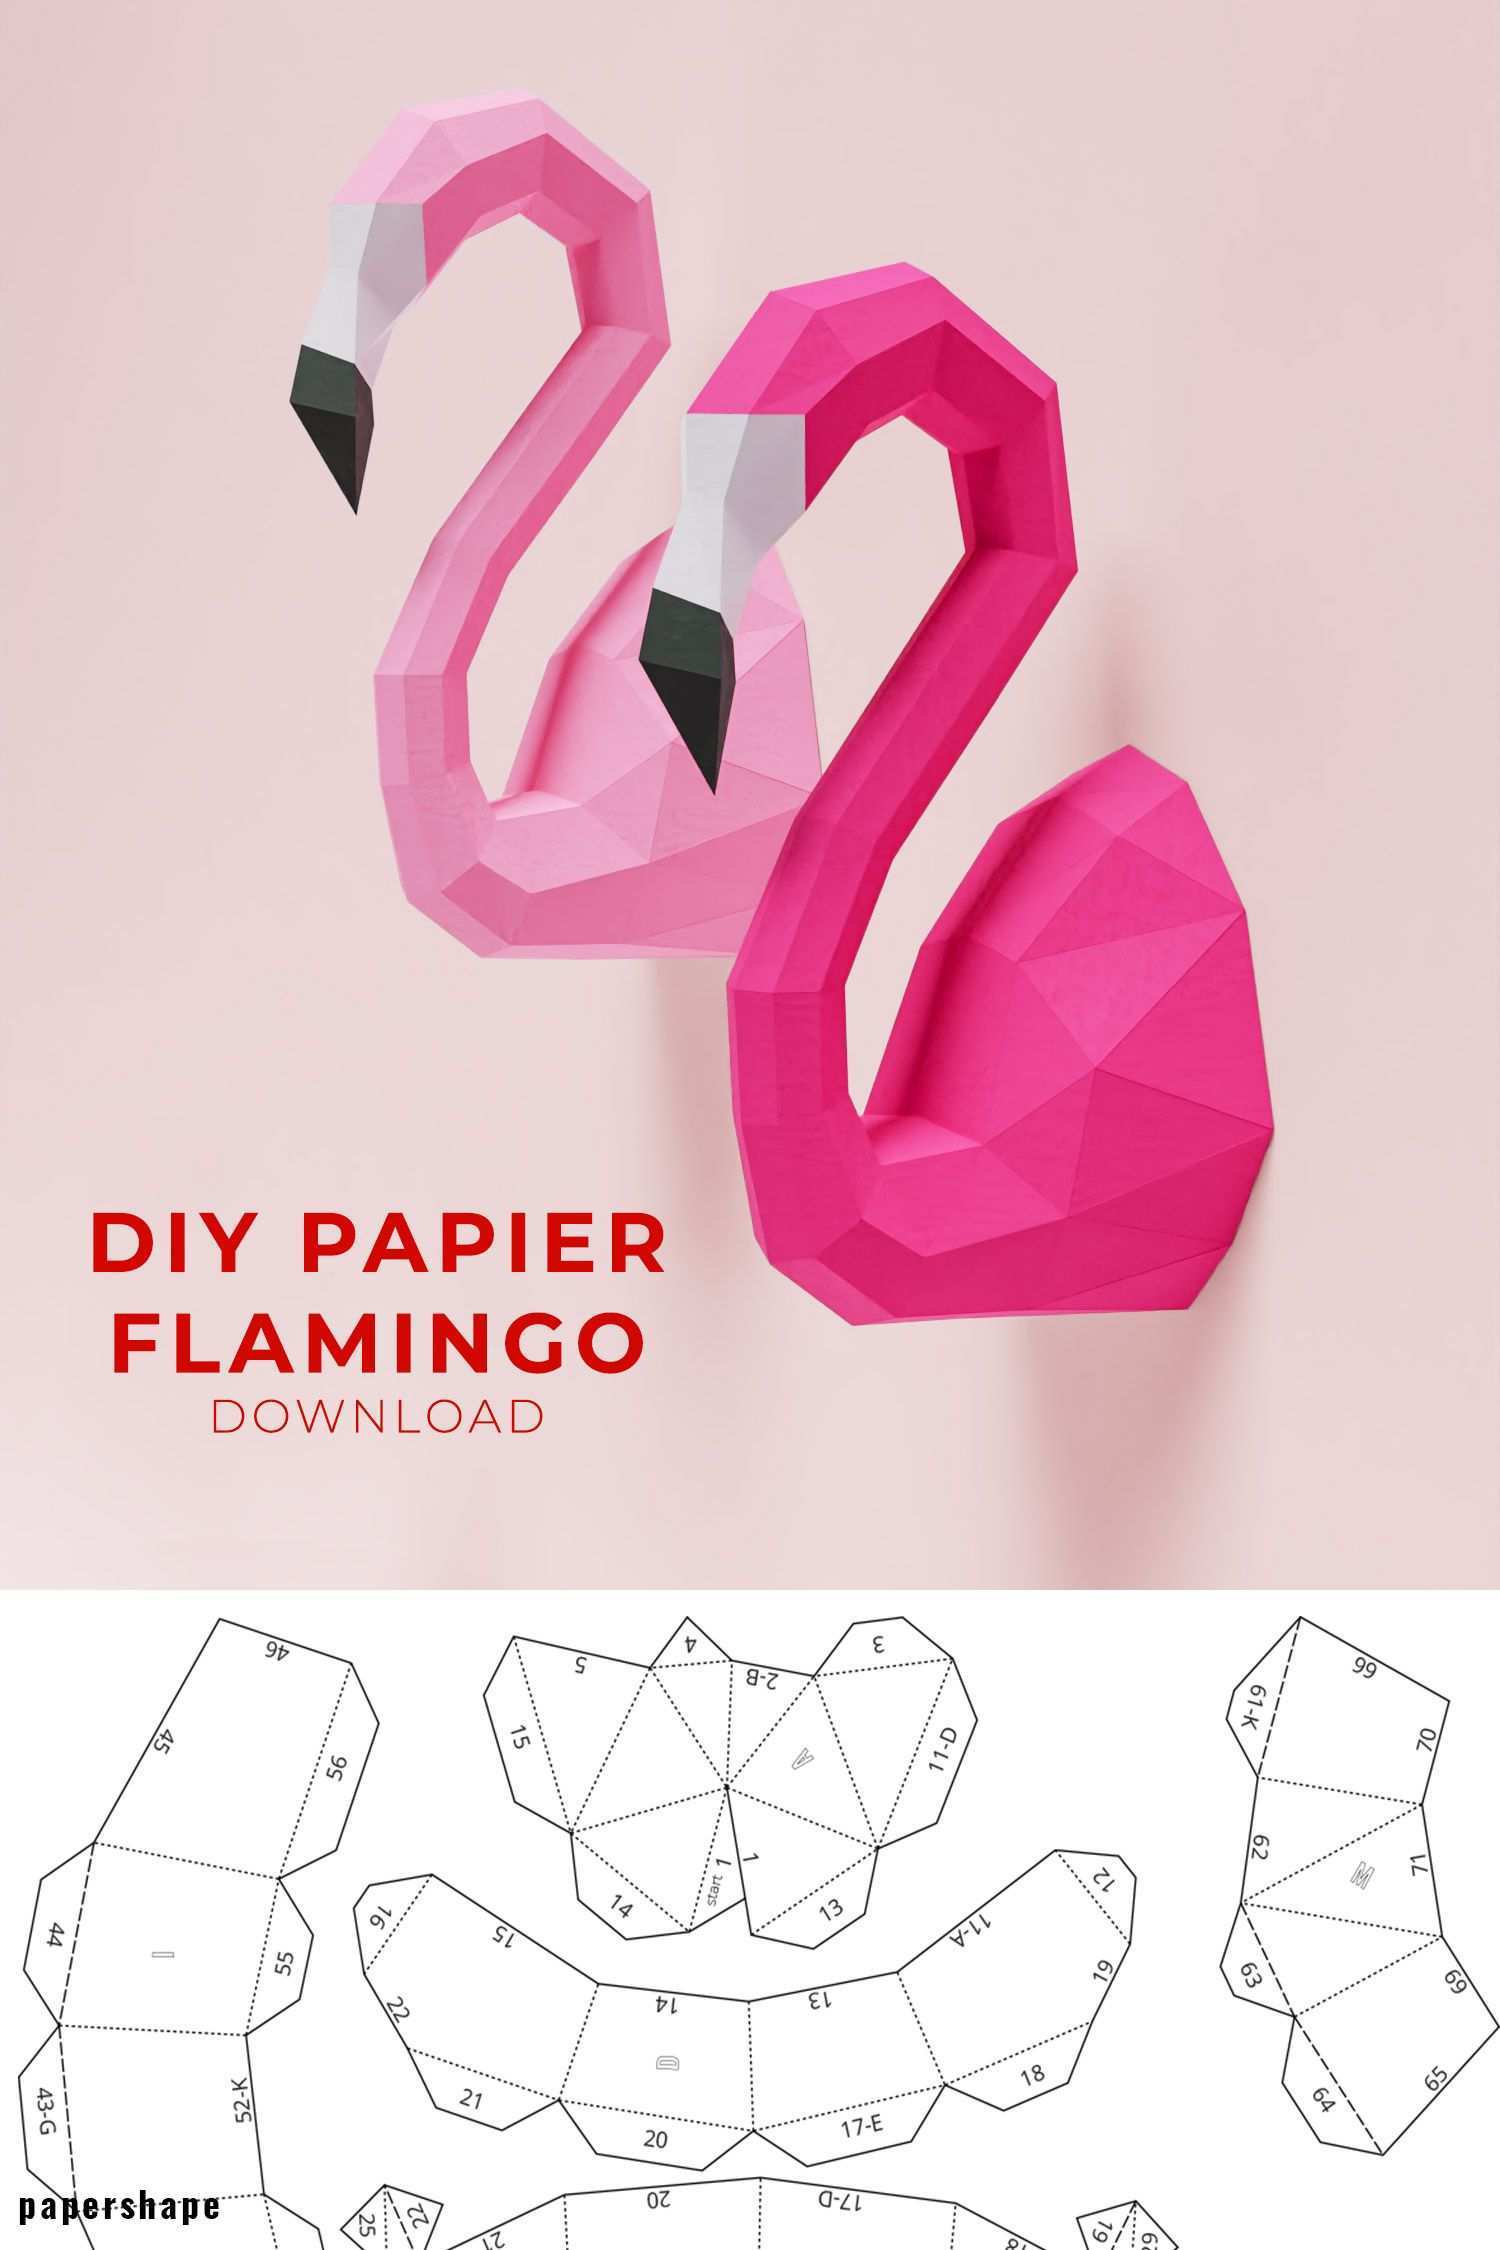 Flamingo Papier Basteln Ideen Basteln Mit Papier Anleitung 3d Papier Handwerk